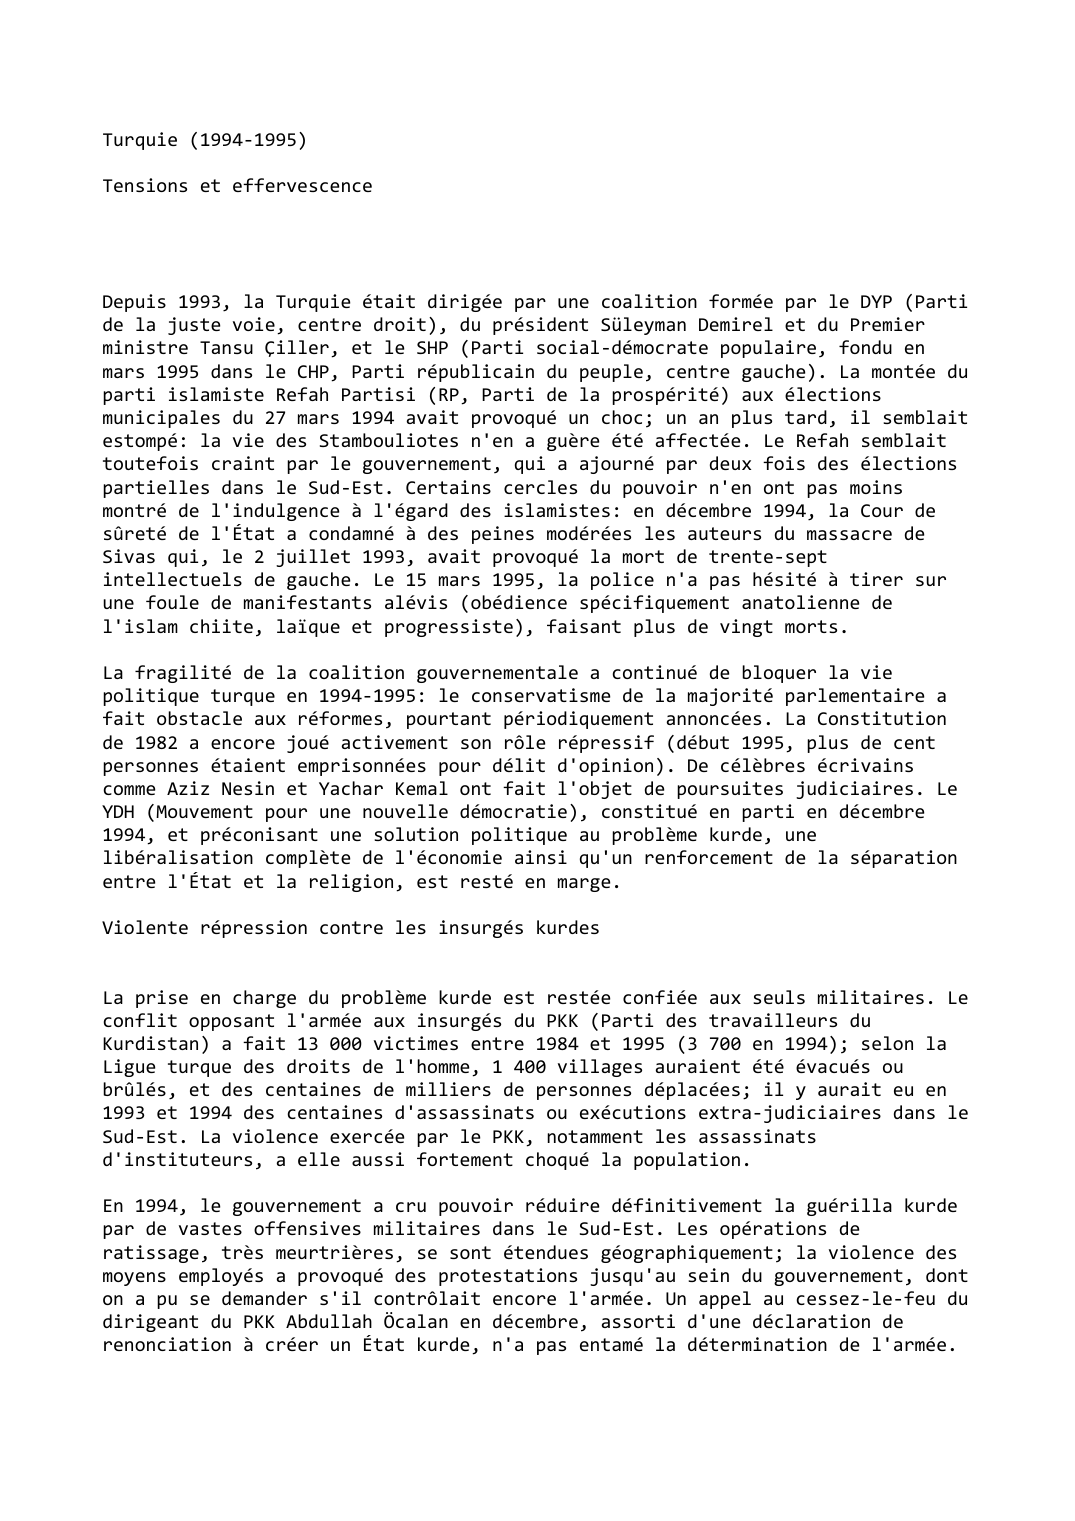 Prévisualisation du document Turquie (1994-1995)

Tensions et effervescence